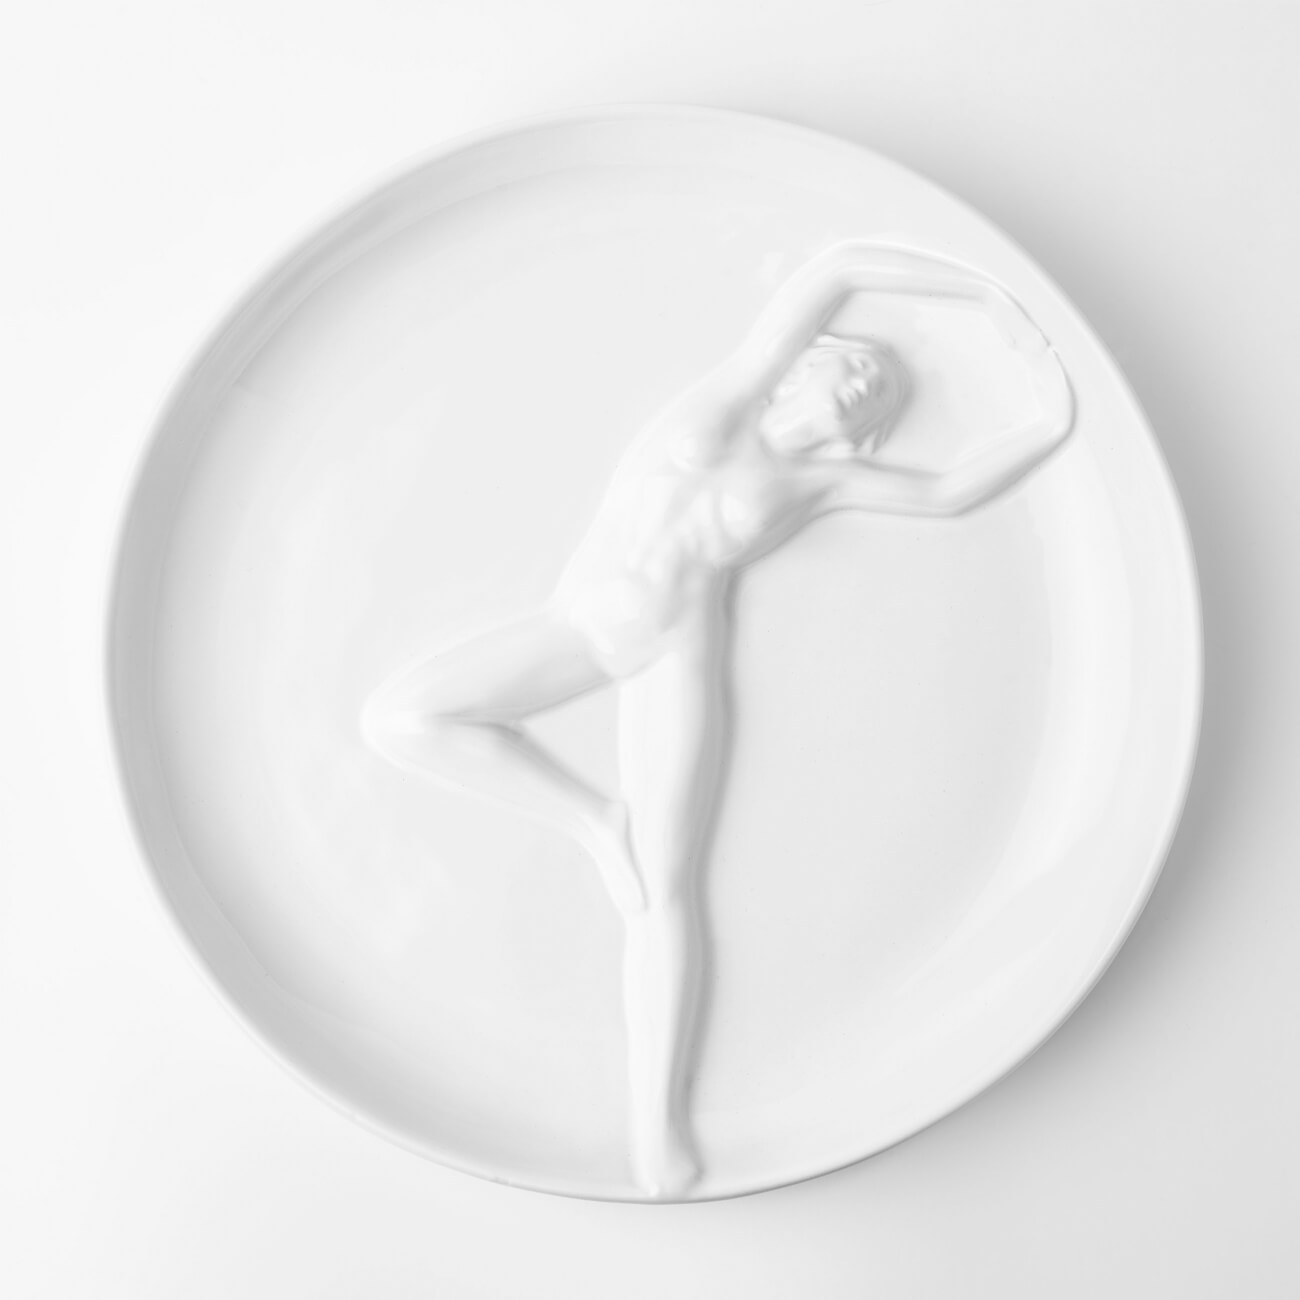 Блюдо, 24 см, керамика, белое, Женщина, Face случайная женщина